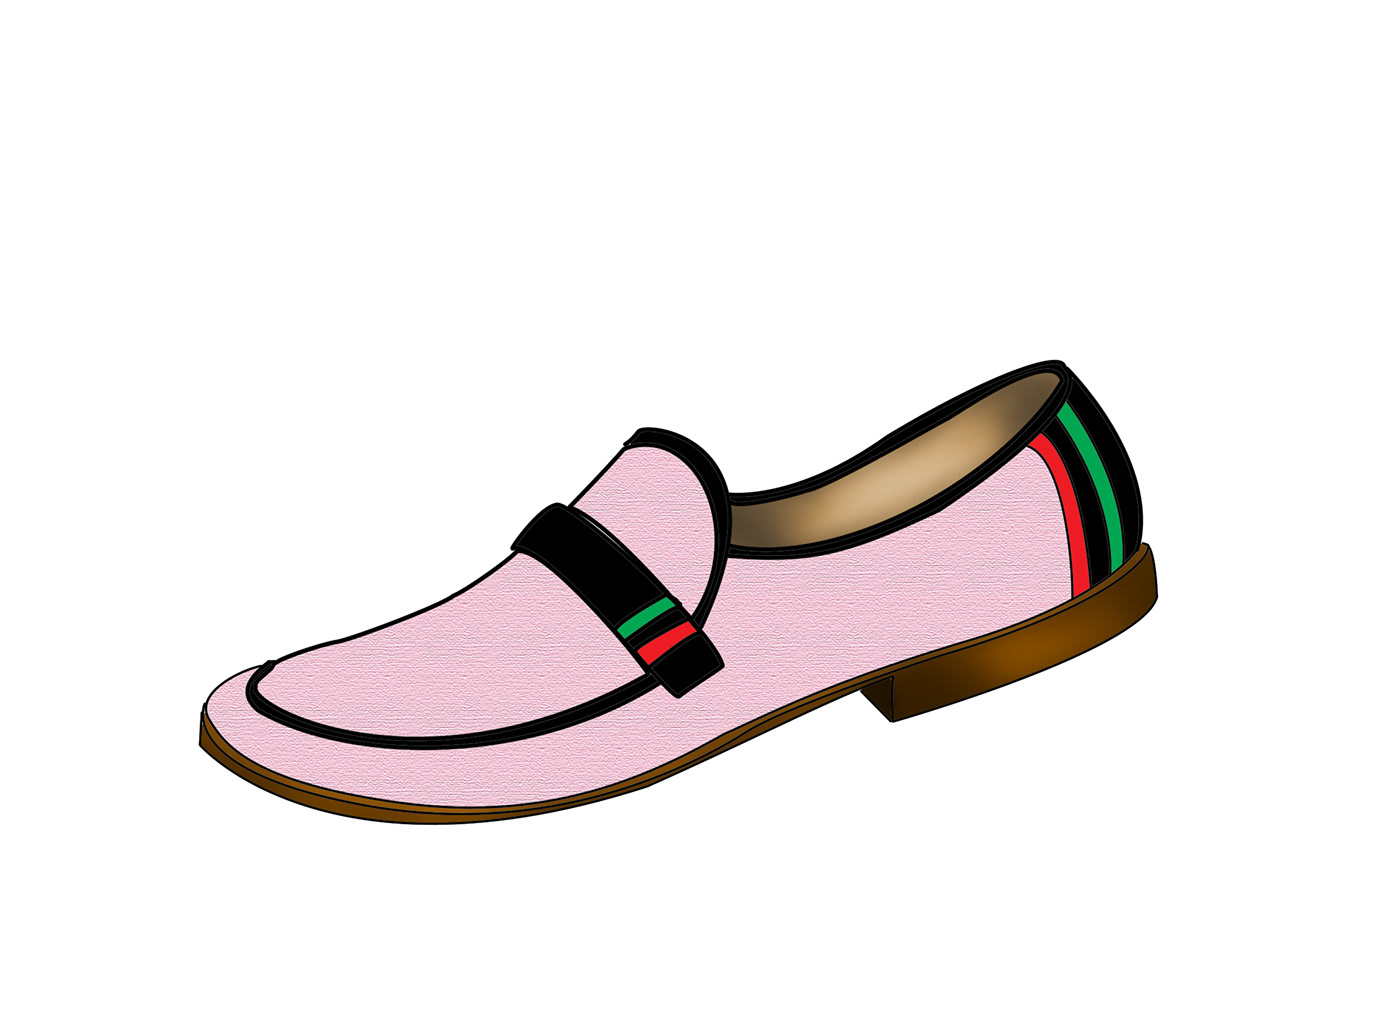 footwear fashion footwear designer footwear shoe shoes loafer moccasins Mens Footwear